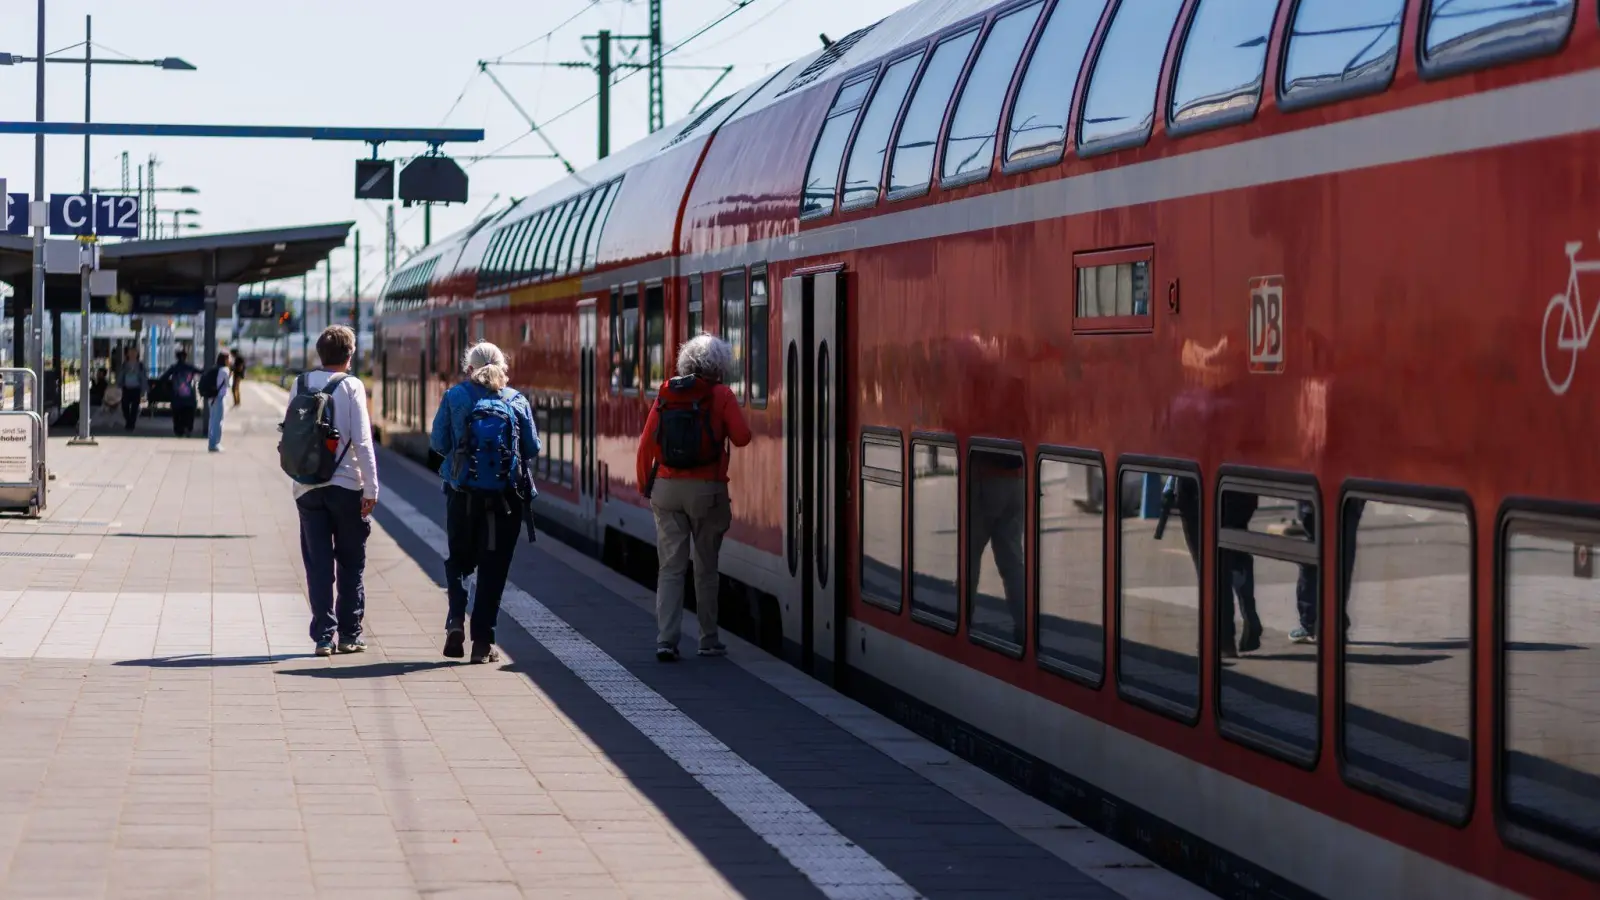 Reisende gsteigen in Karlsruhe in einen Regionalexpress (RE) der Deutschen Bahn. Ab September schlägt eine solche Fahrt wieder mehr zu Buche. (Foto: Philipp von Ditfurth/dpa)